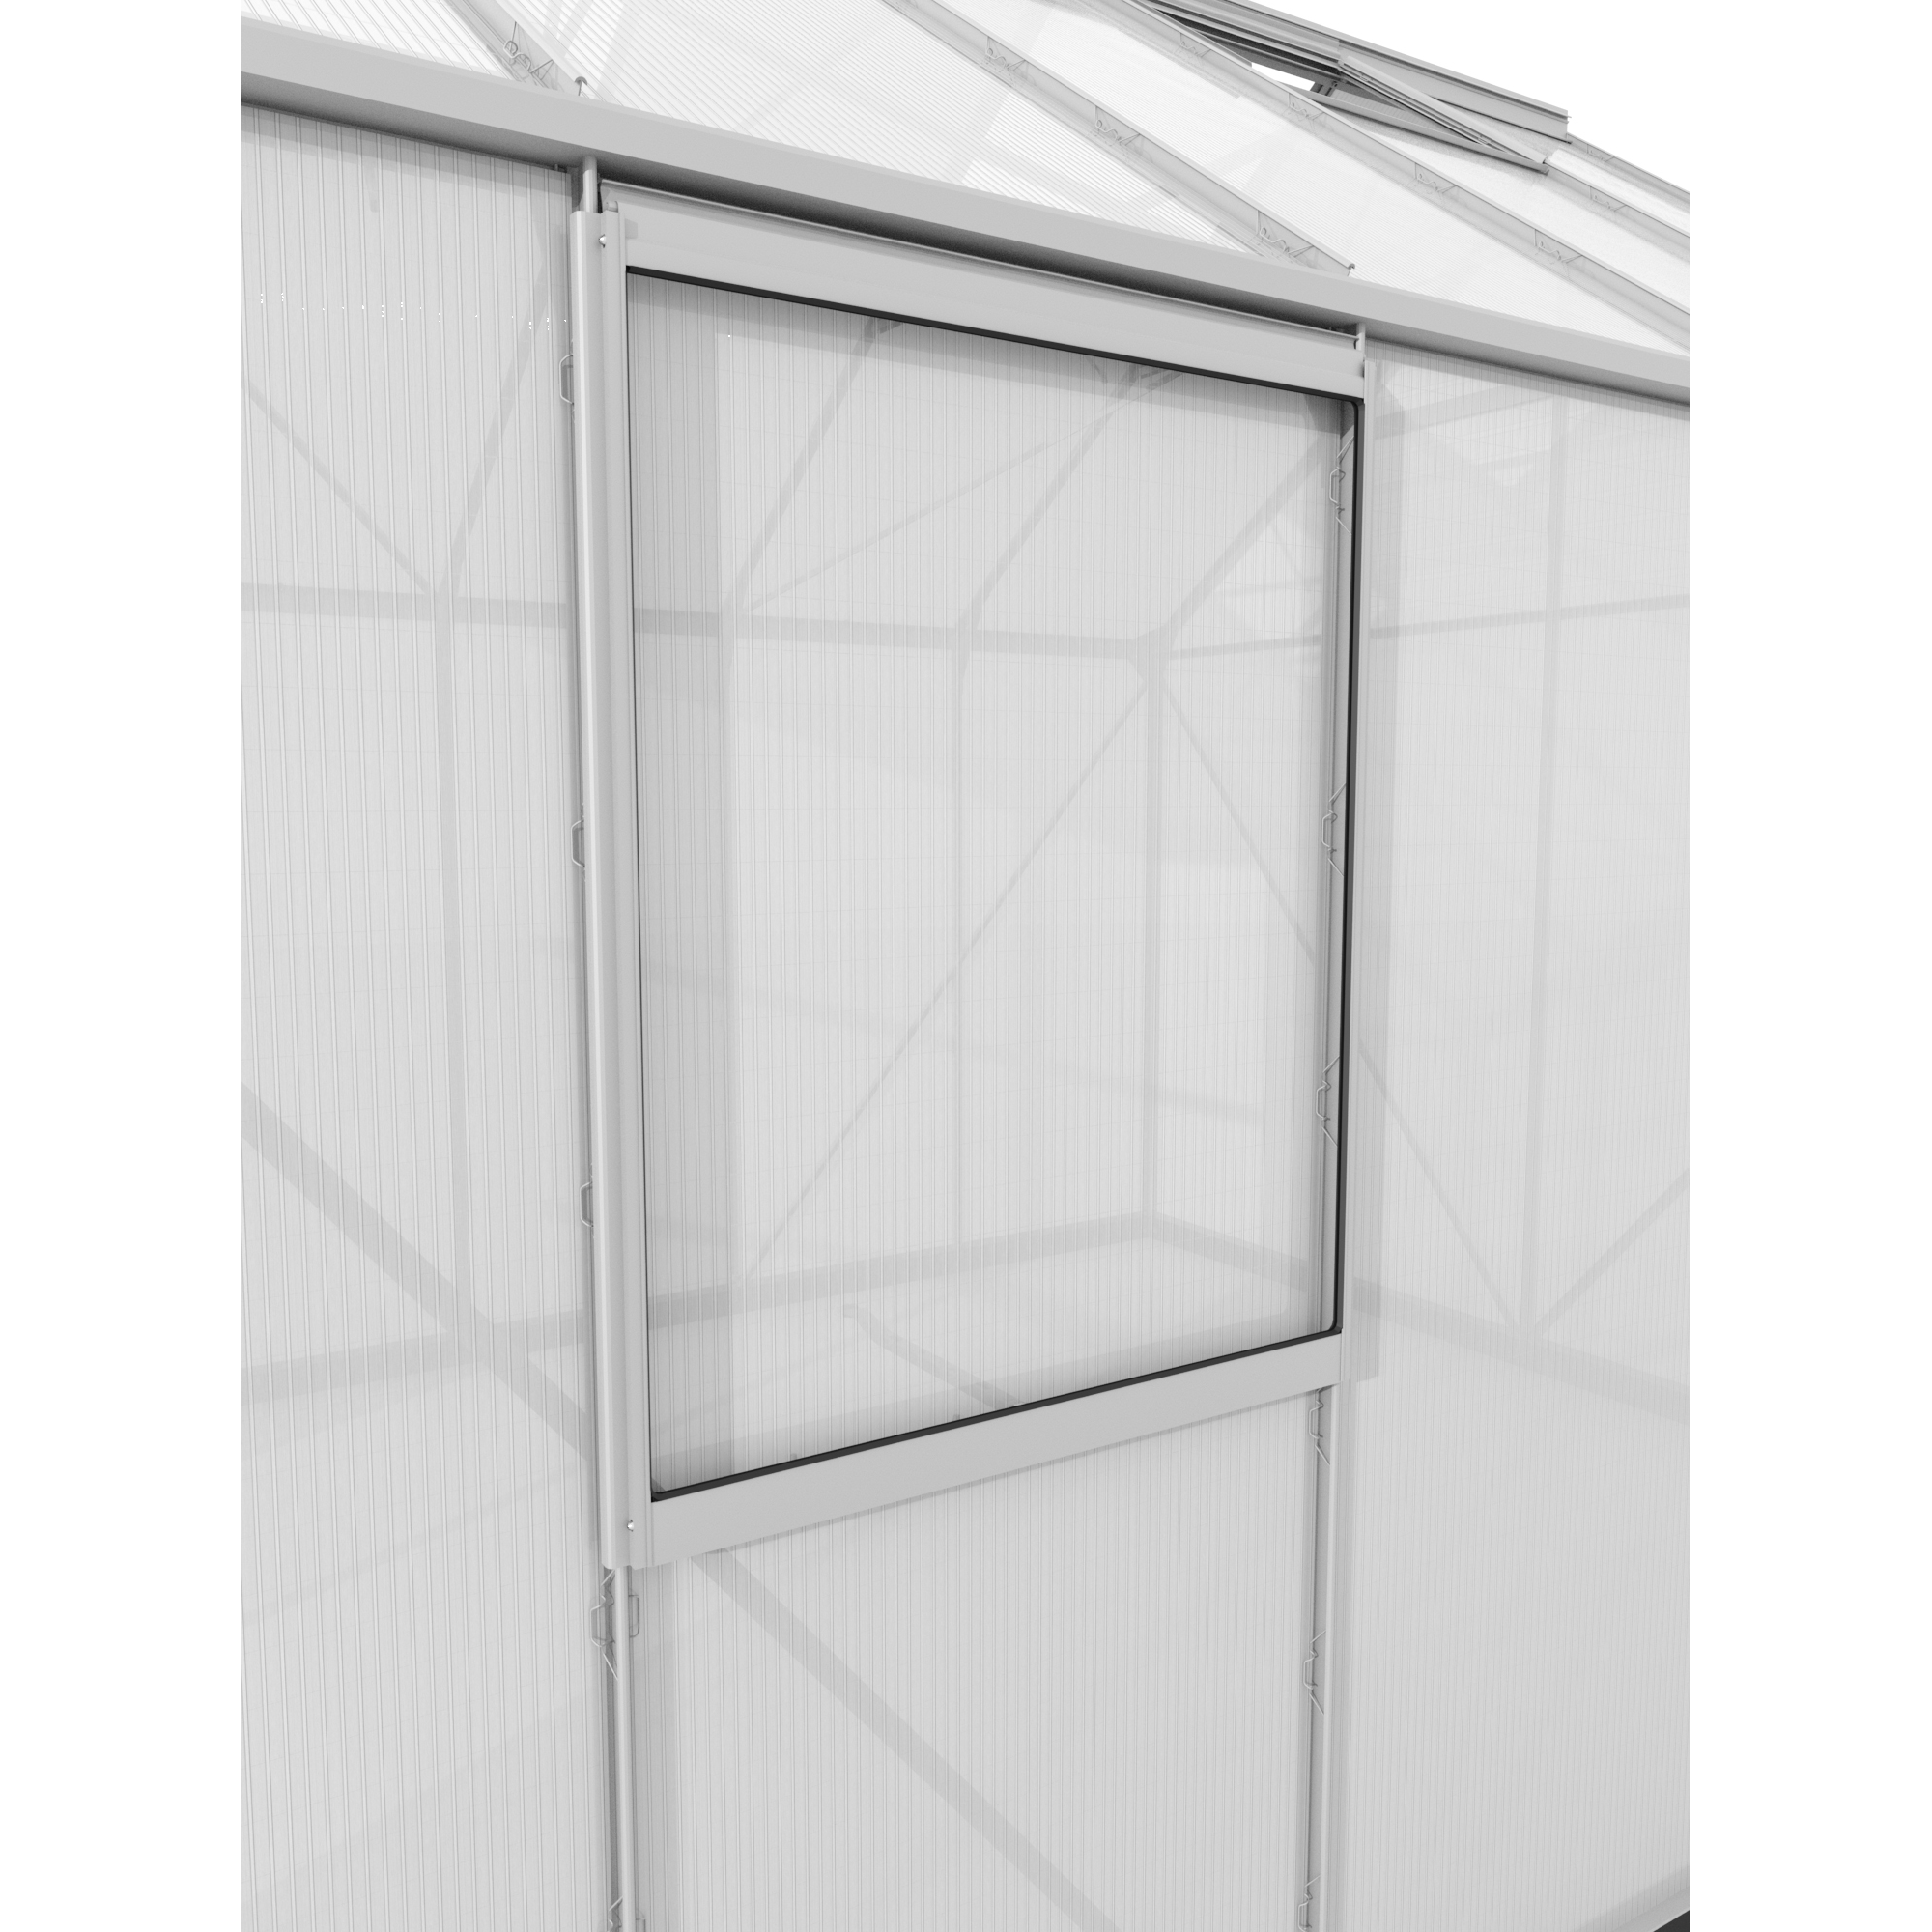 Alu-Seitenfenster für Gewächshäuser aluminiumfarben 59 x 79,2 cm + product picture